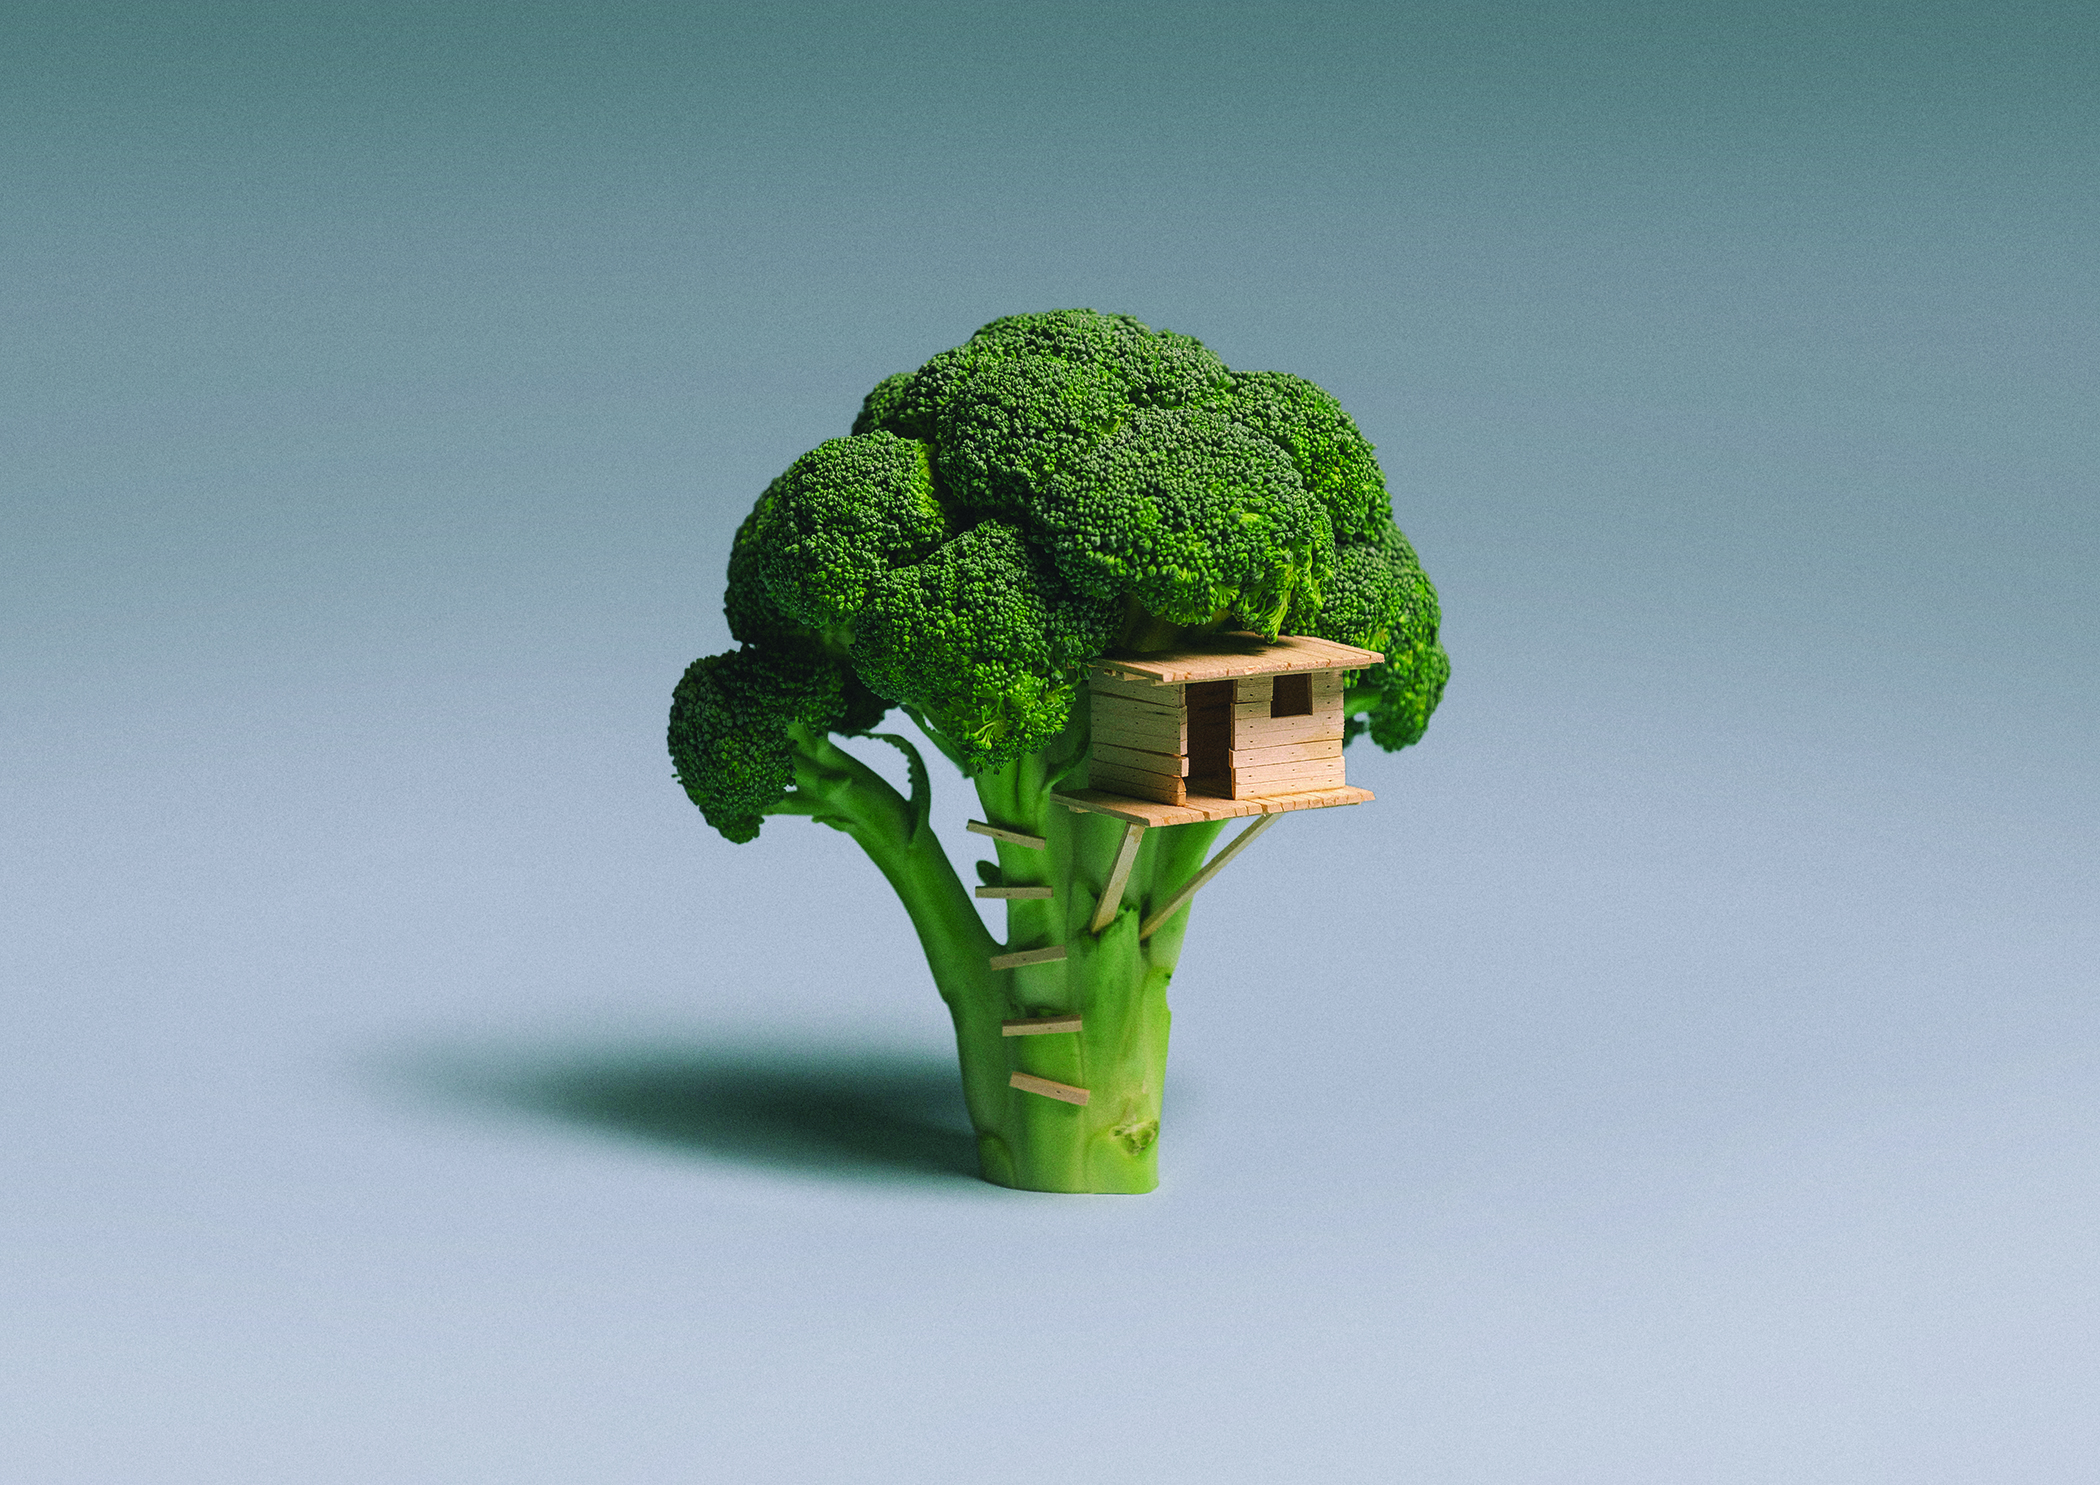 Broccoli_House_lo-res.jpg